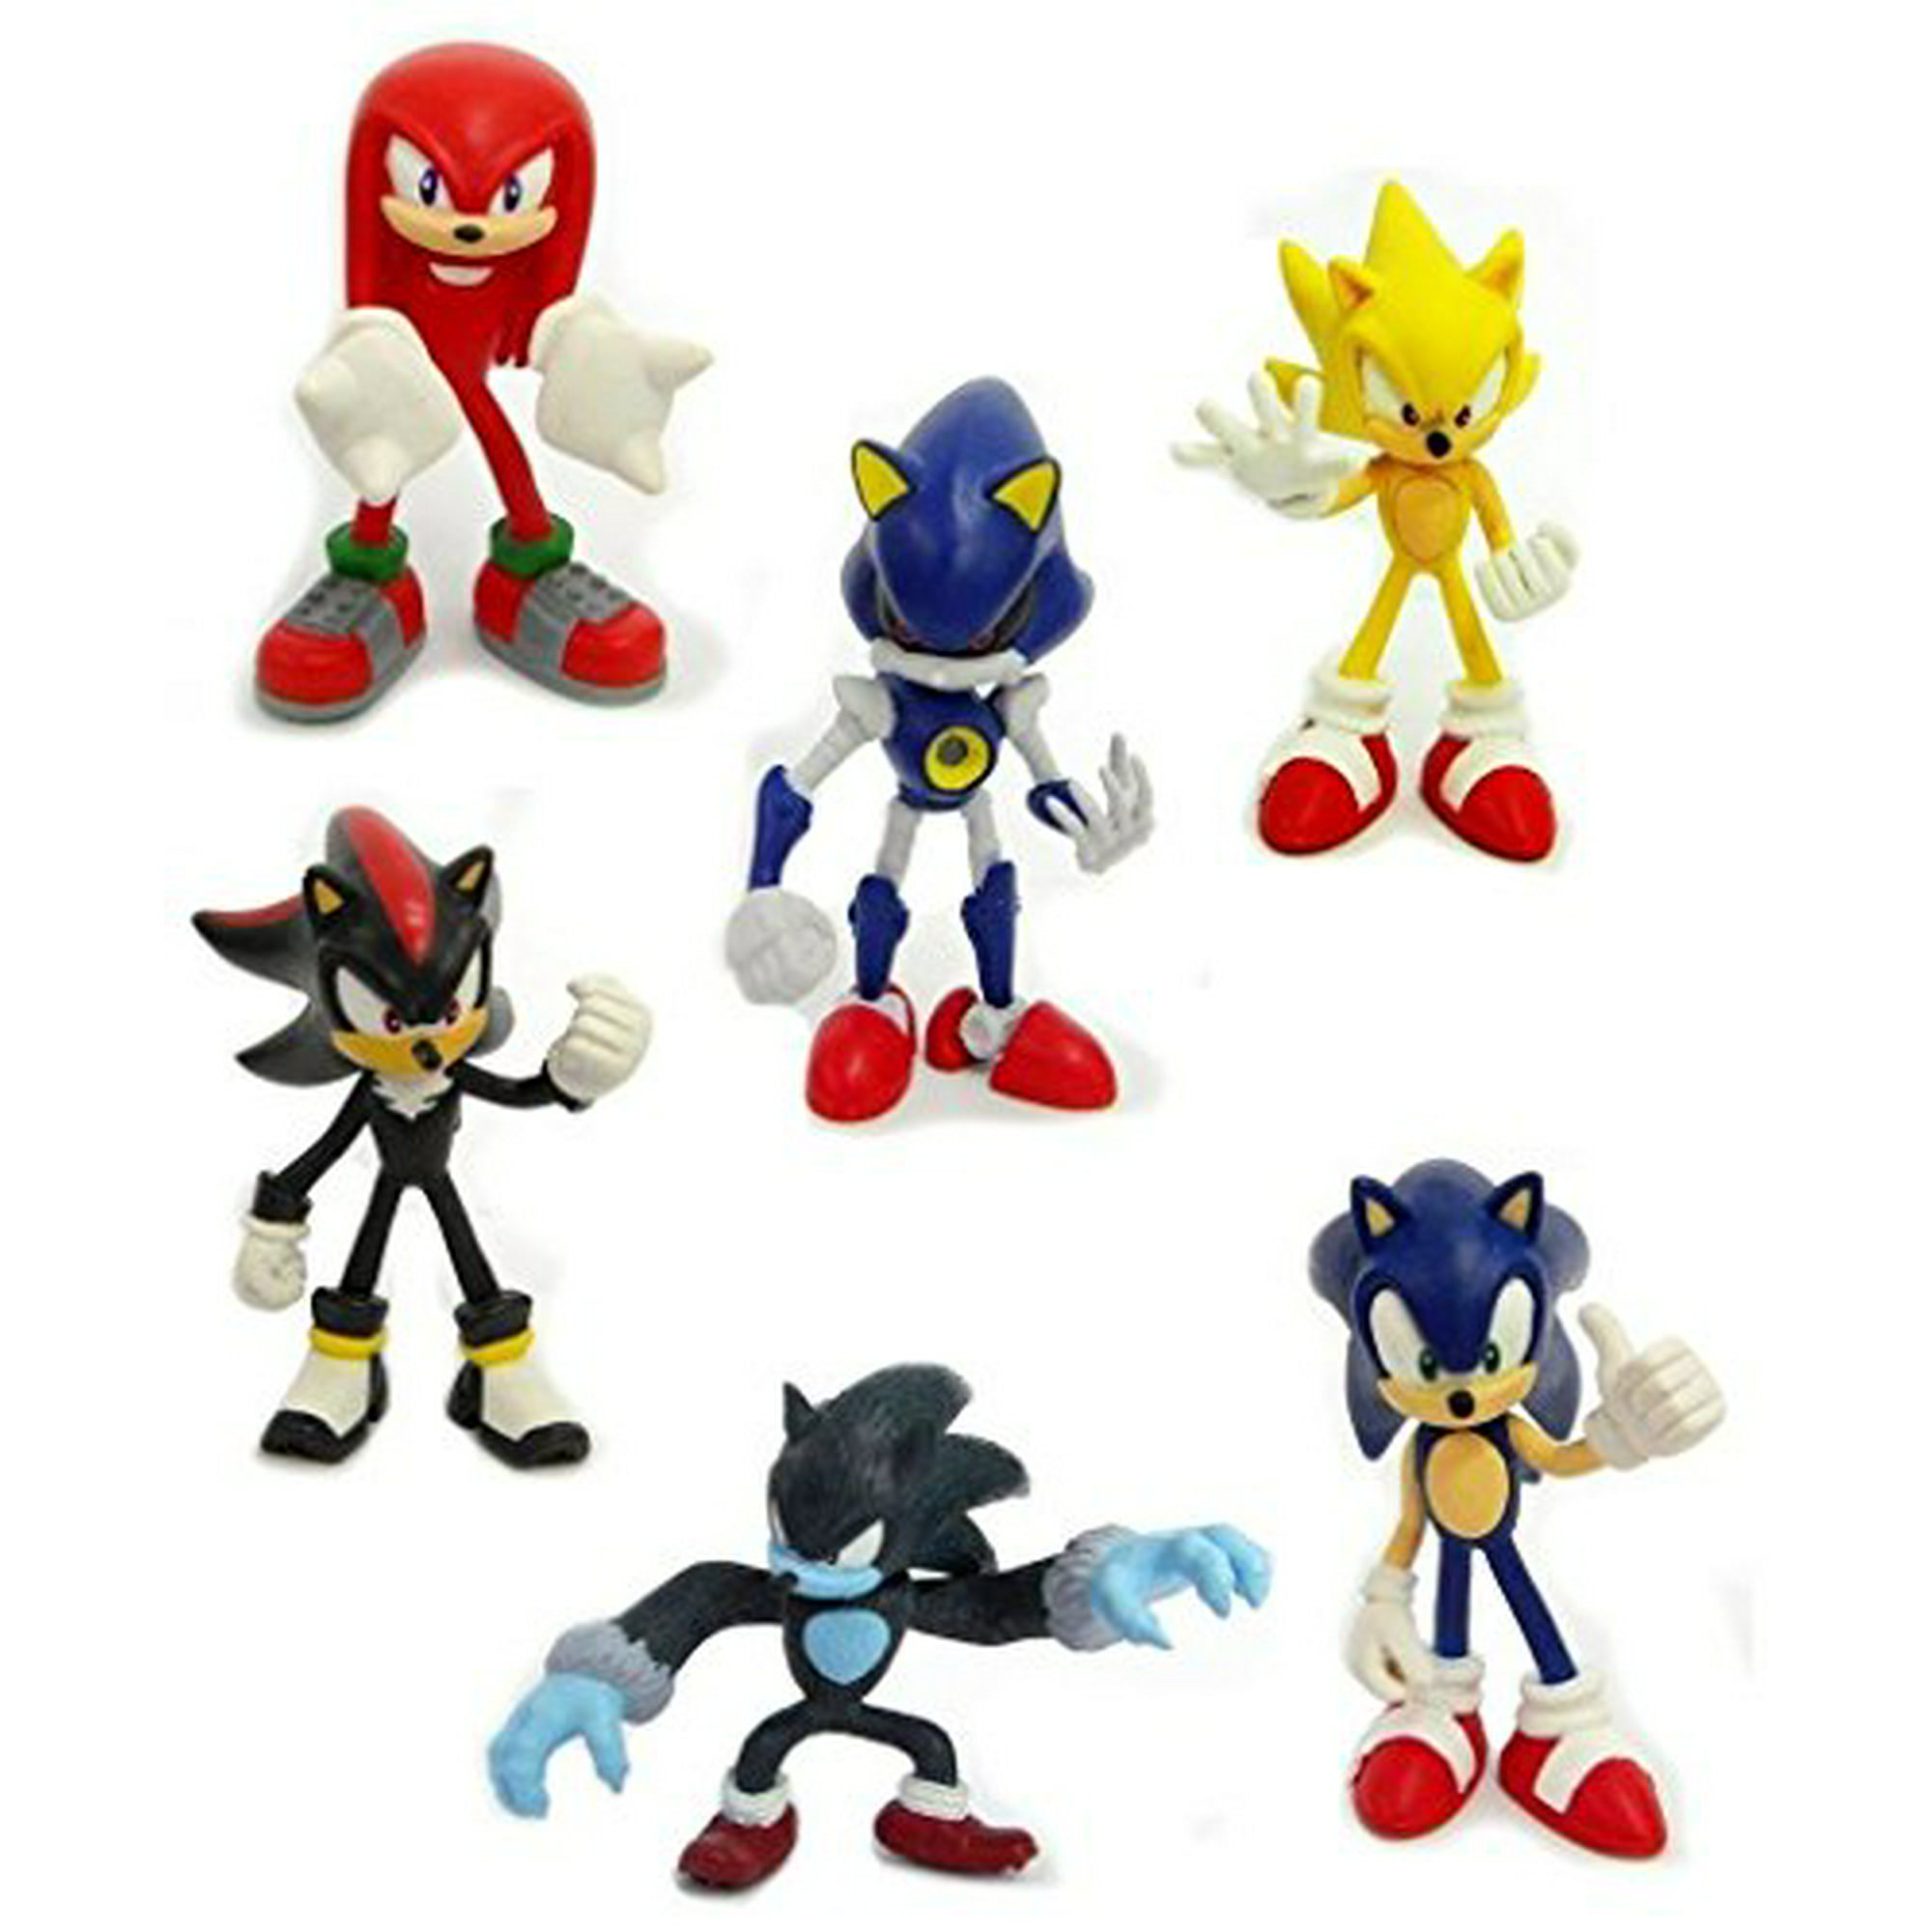  Sonic The Hedgehog Figuras de acción paquete de 6 – Paquete de  recuerdos de fiesta de Sonic con 6 figuras de Sonic incluyendo calcomanías  de Sonic, Amy, Tails y más Plus